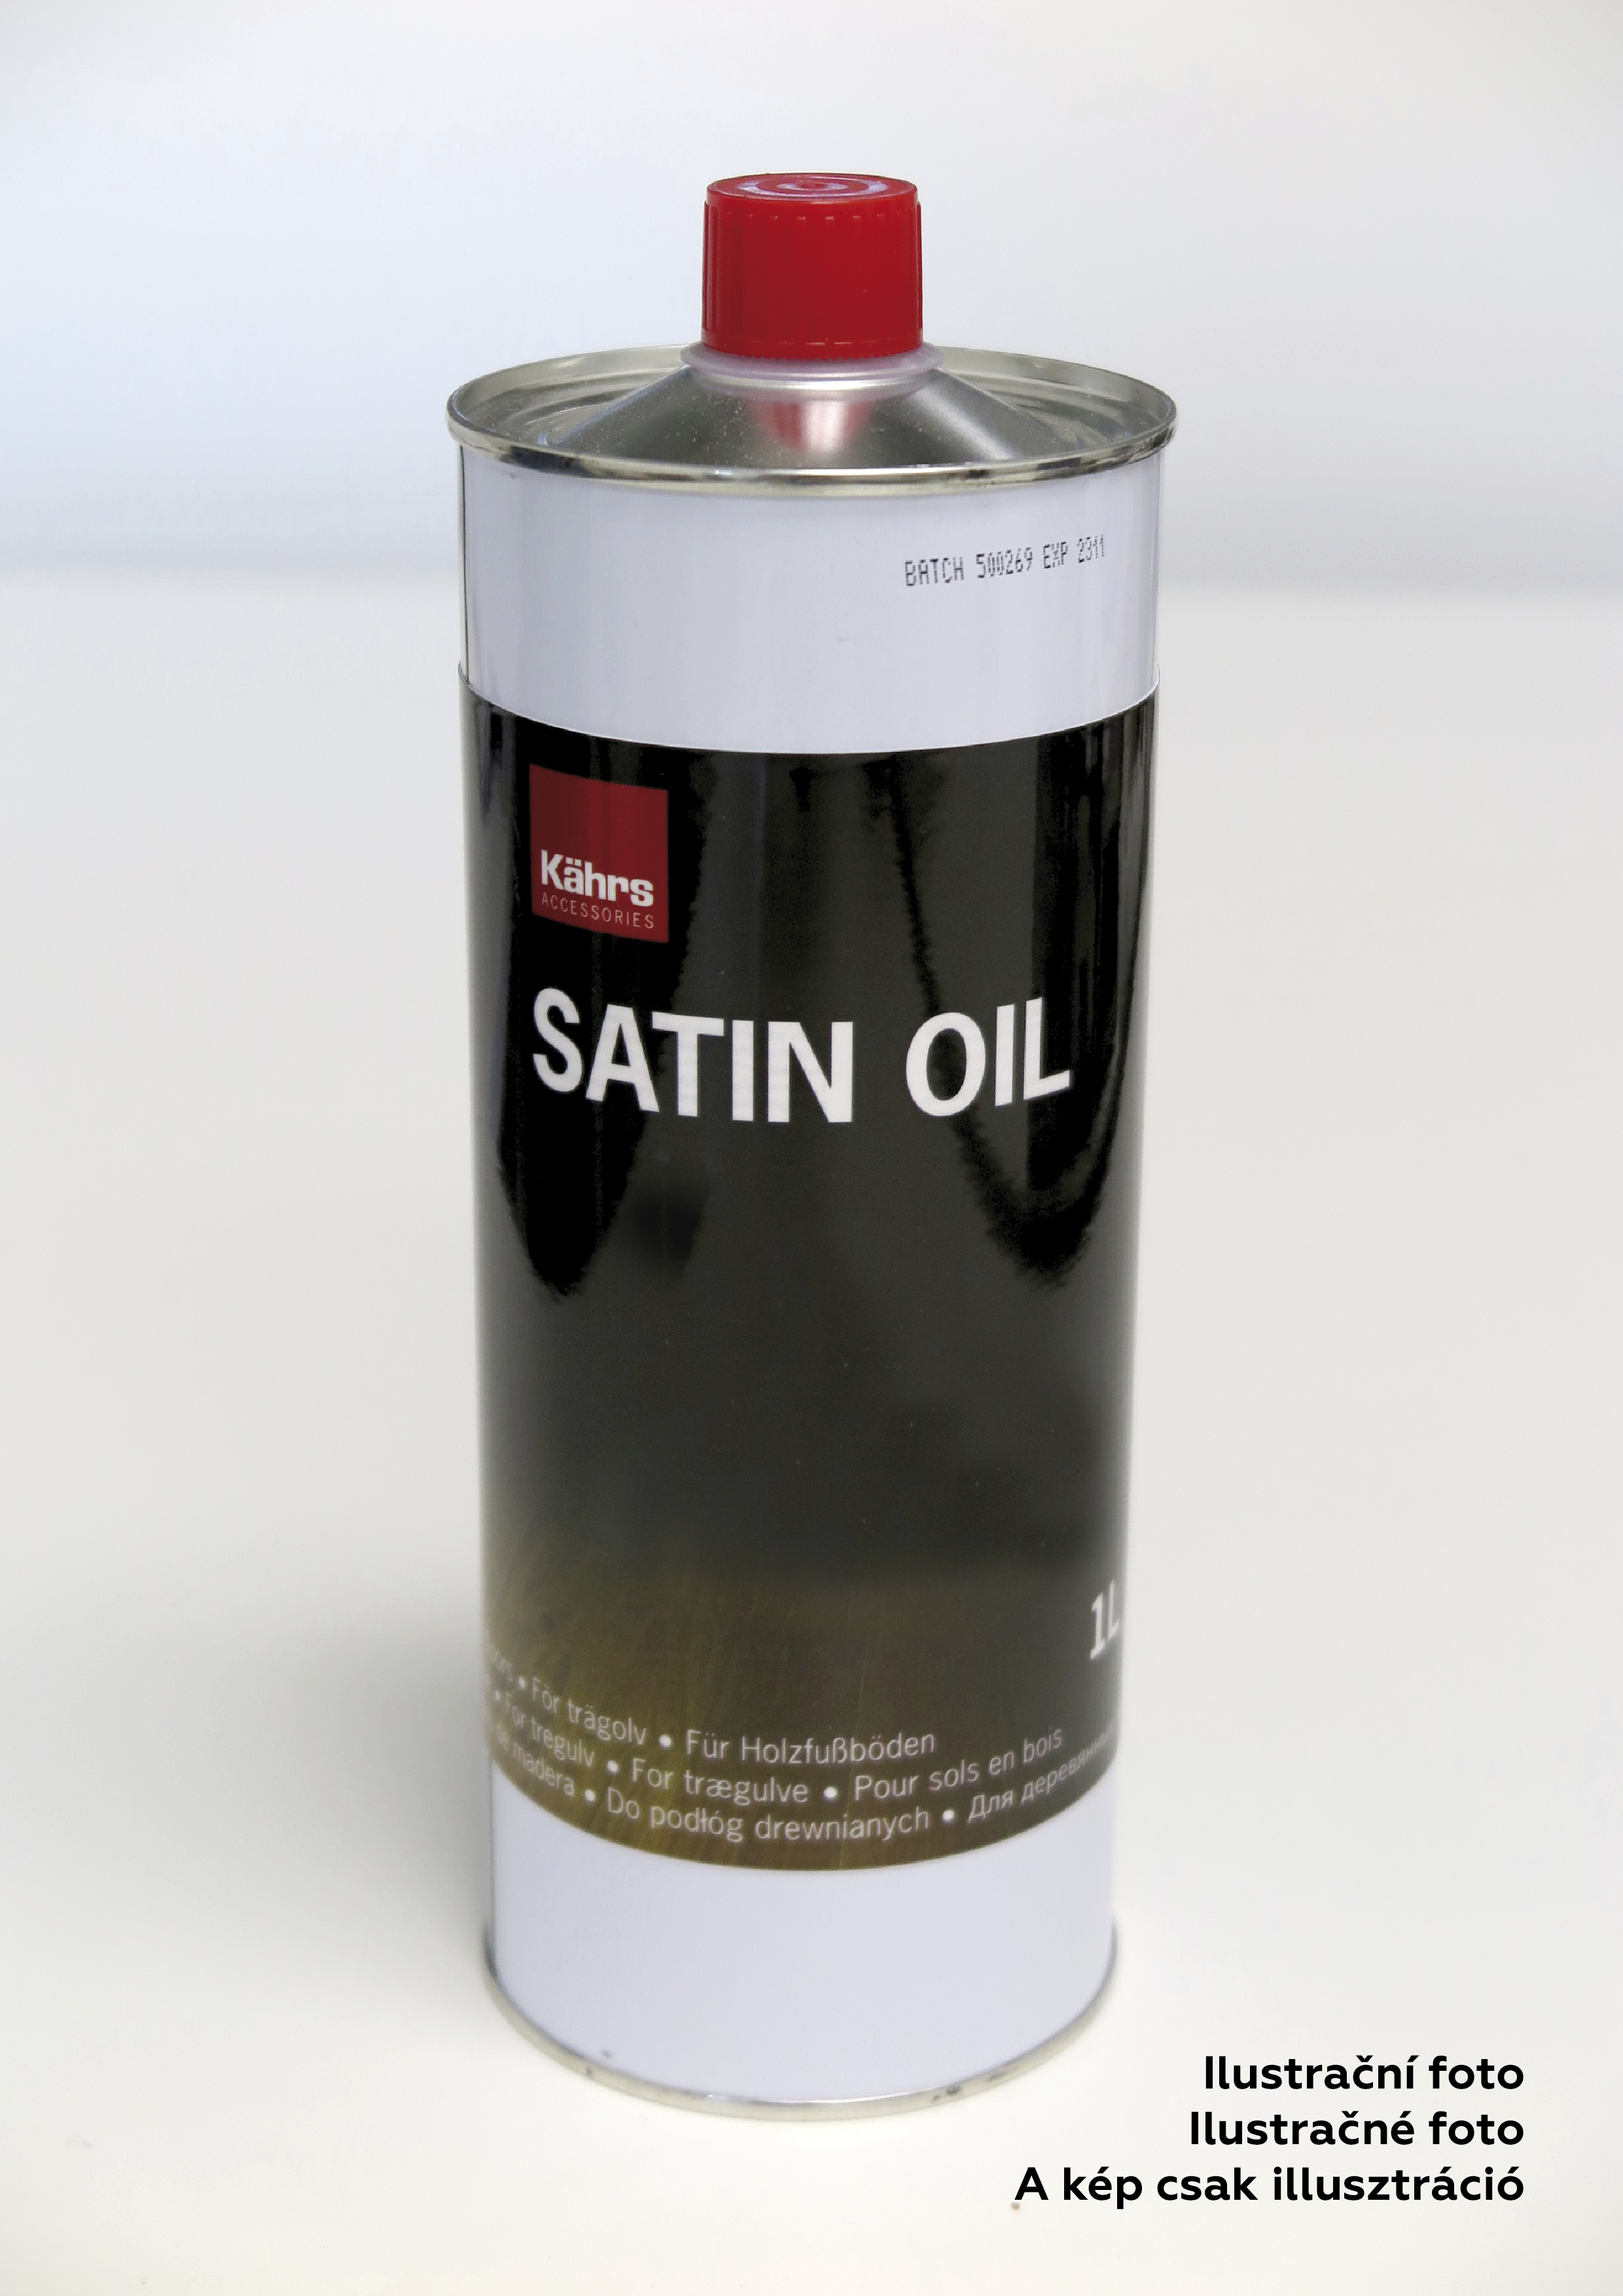 Satin Oil matný šedý 01 (dub Handbörd) 1 l